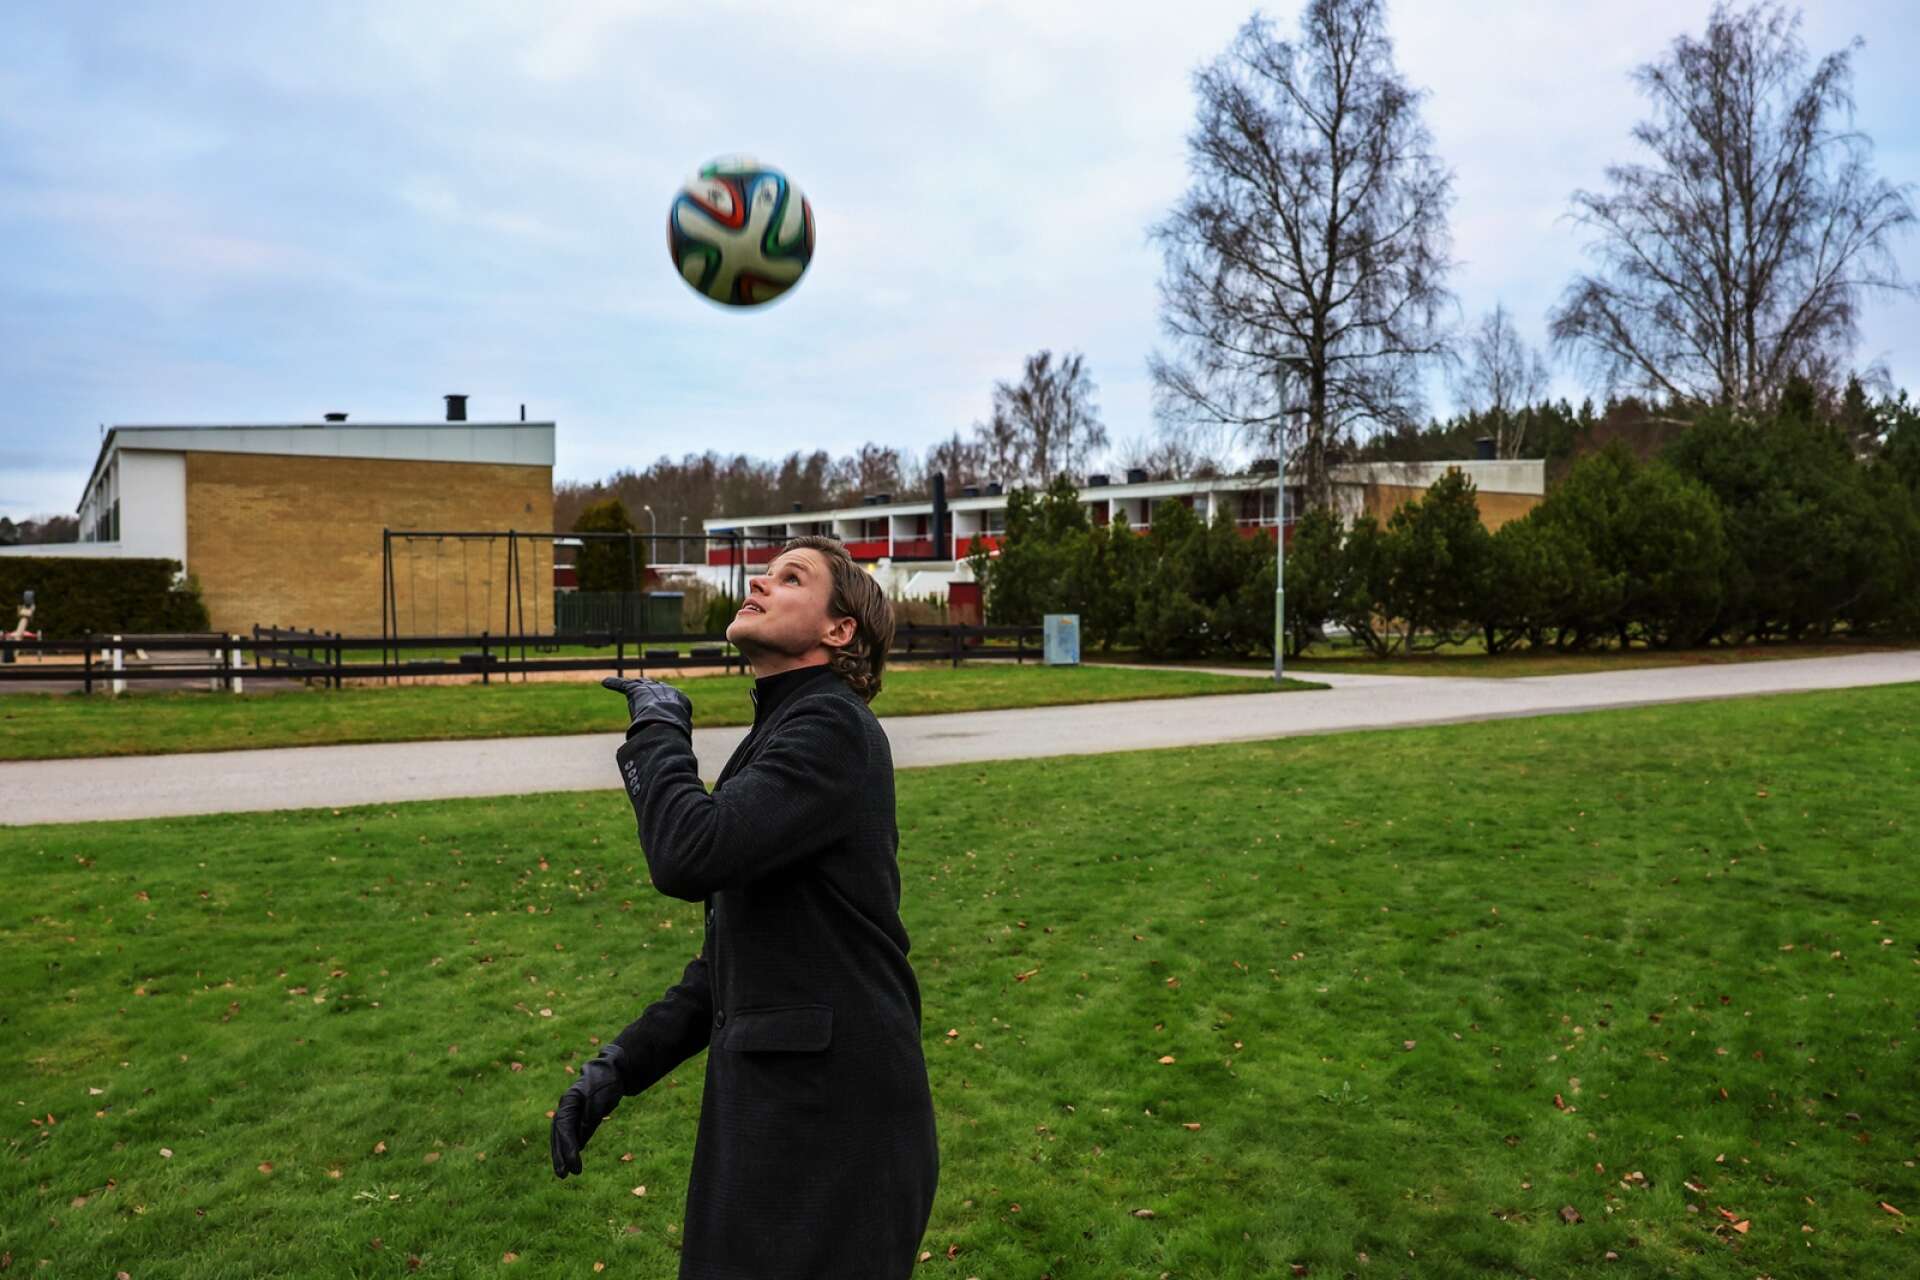 På den här gräsytan spenderade Gustaf Norlin x antal fotbollstimmar under sin uppväxt. Ofta tillsammans med sin storebror, LFK-spelaren Oscar Norlin.